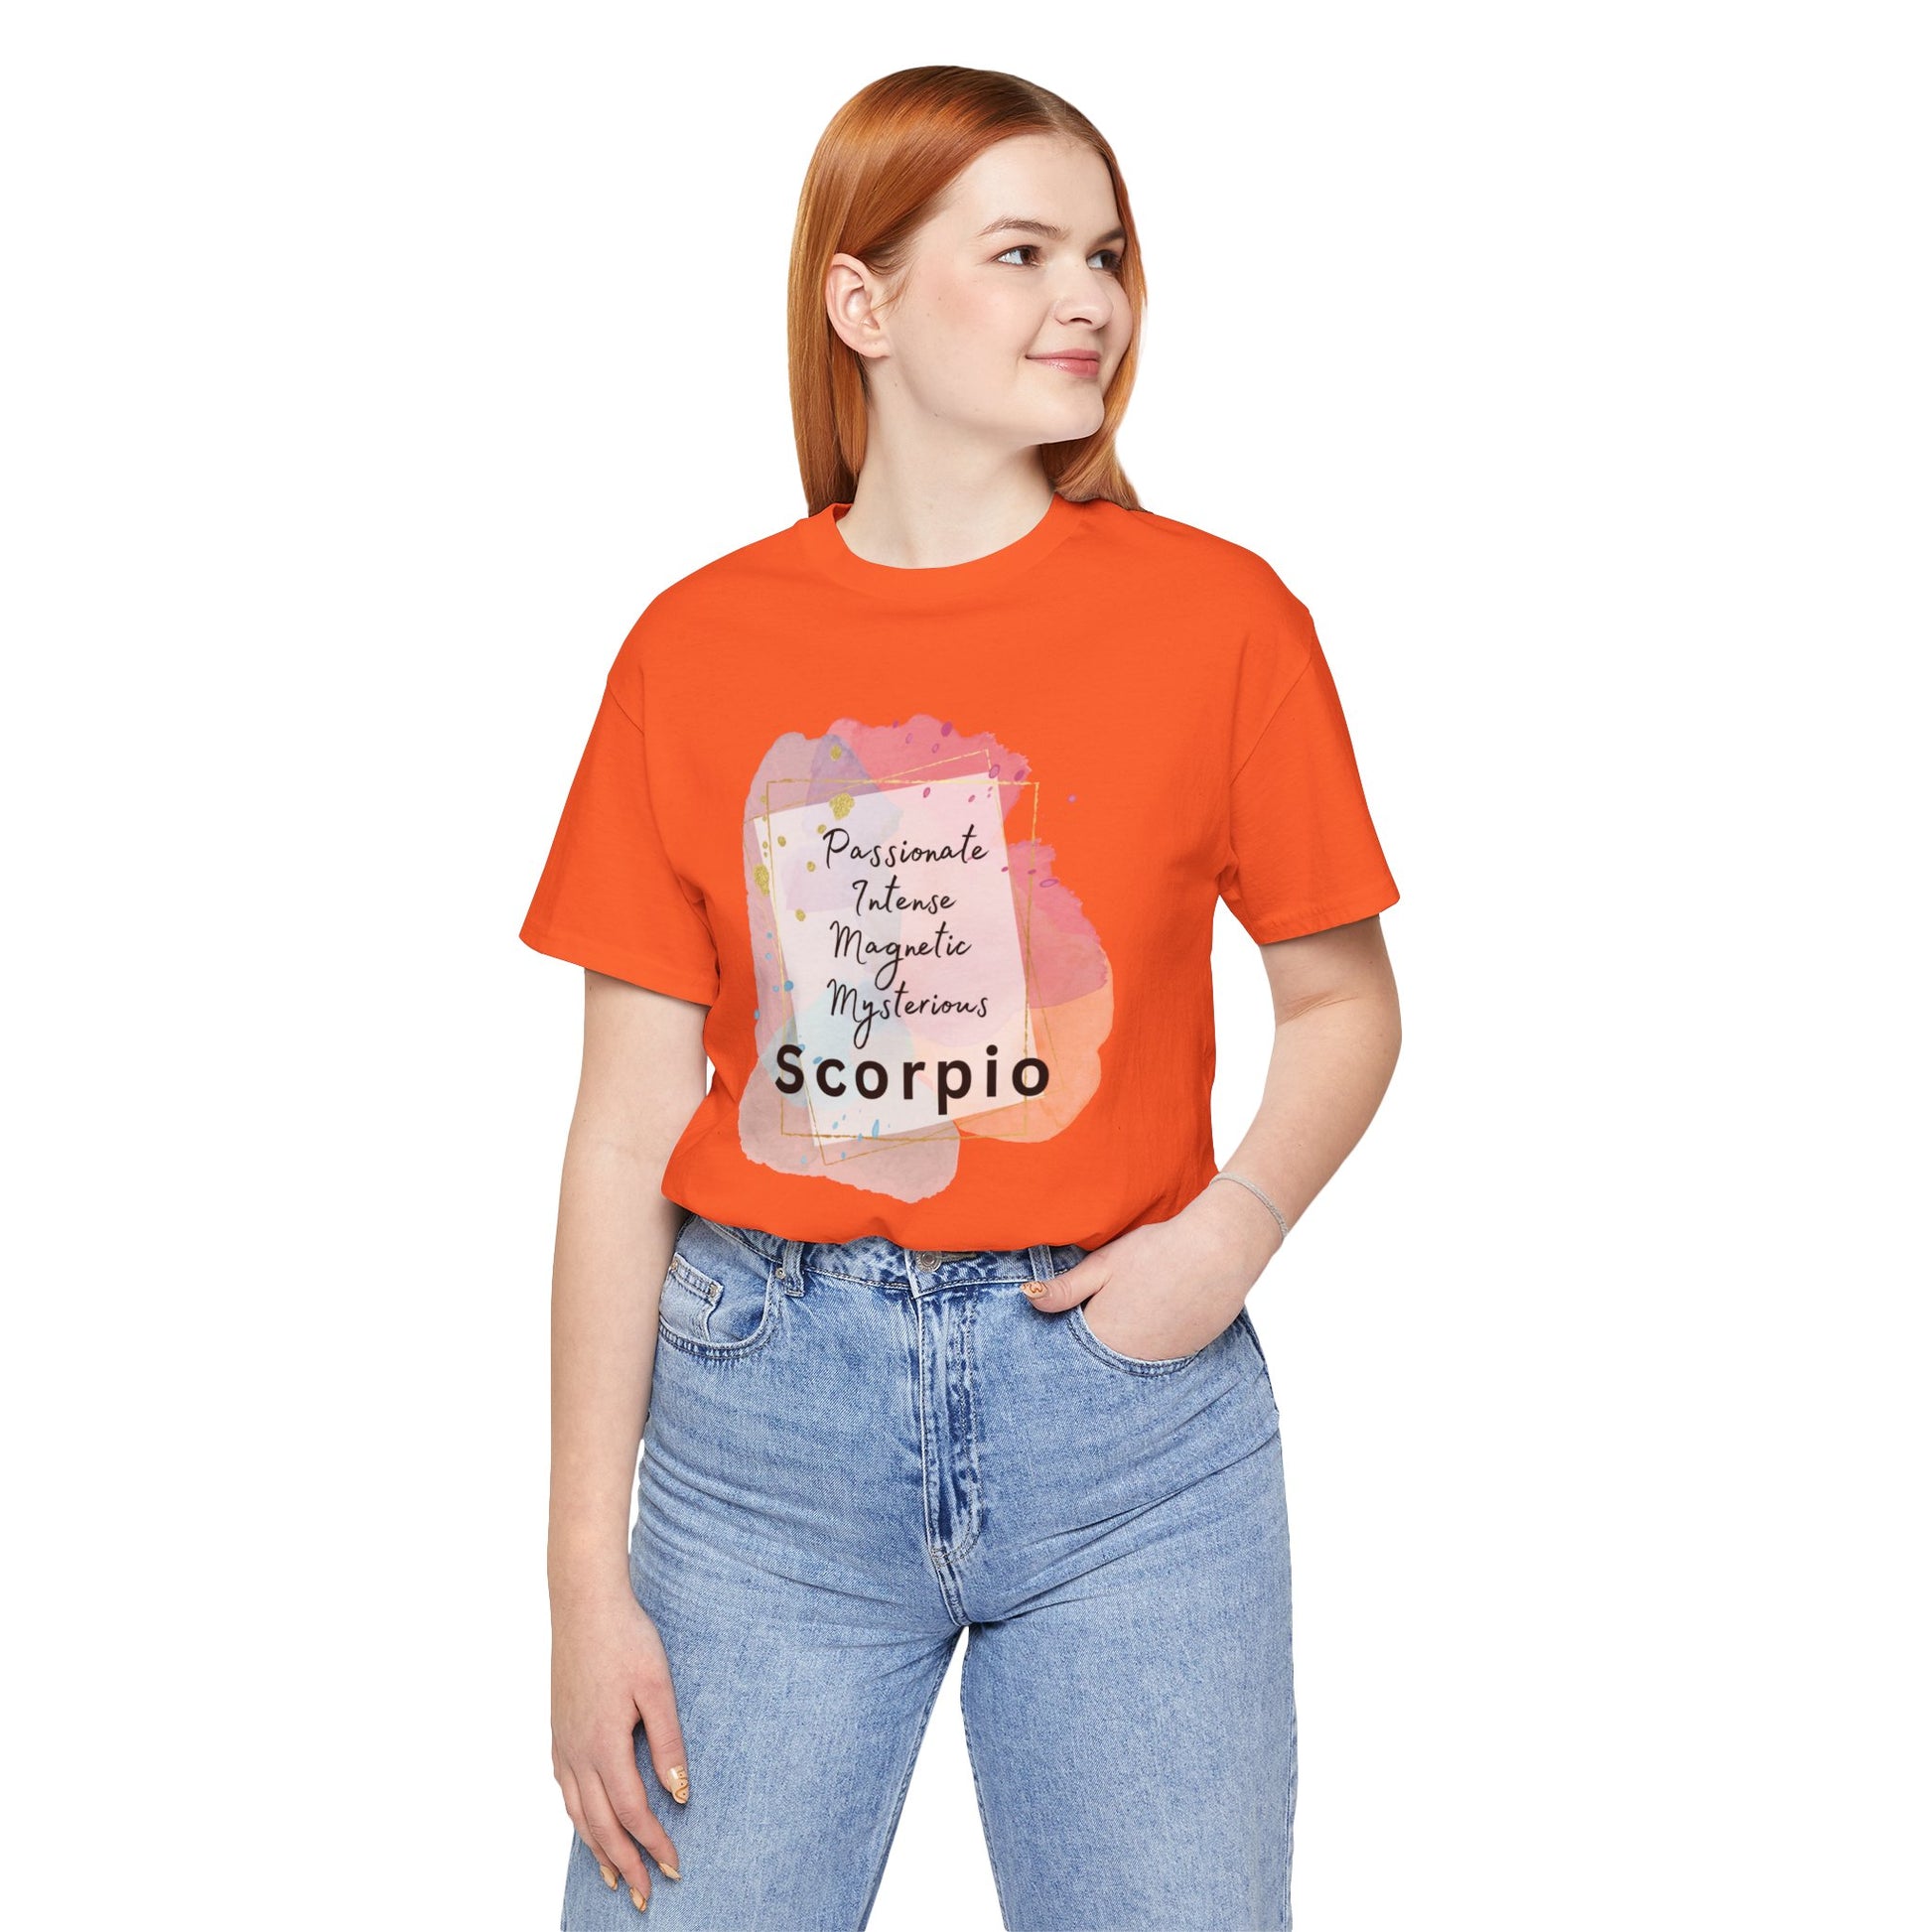 Scorpio T-Shirt - Orange